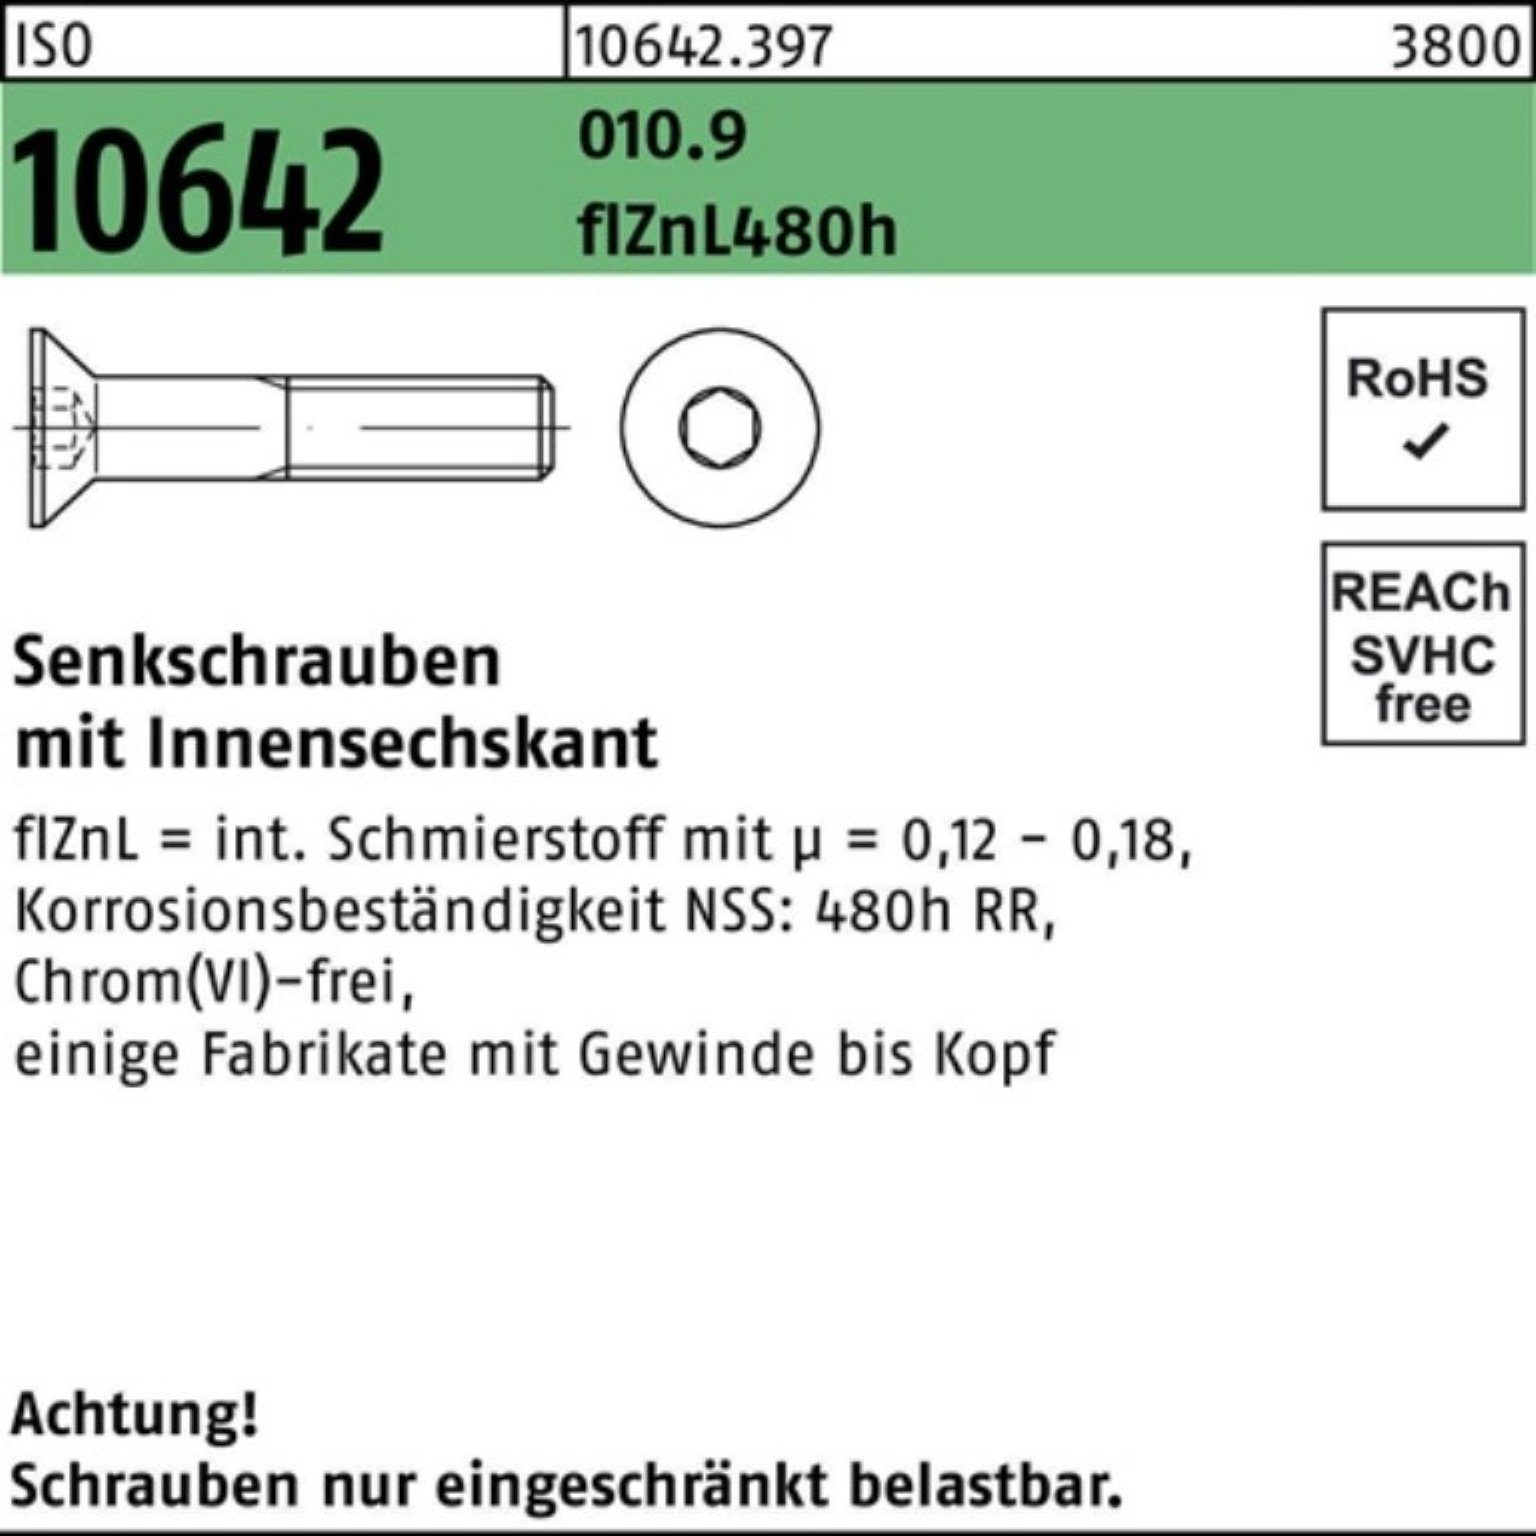 Reyher Senkschraube 100er Pack Senkschraube ISO 10642 Innen-6kt M10x45 010.9 flZnL 480h zi